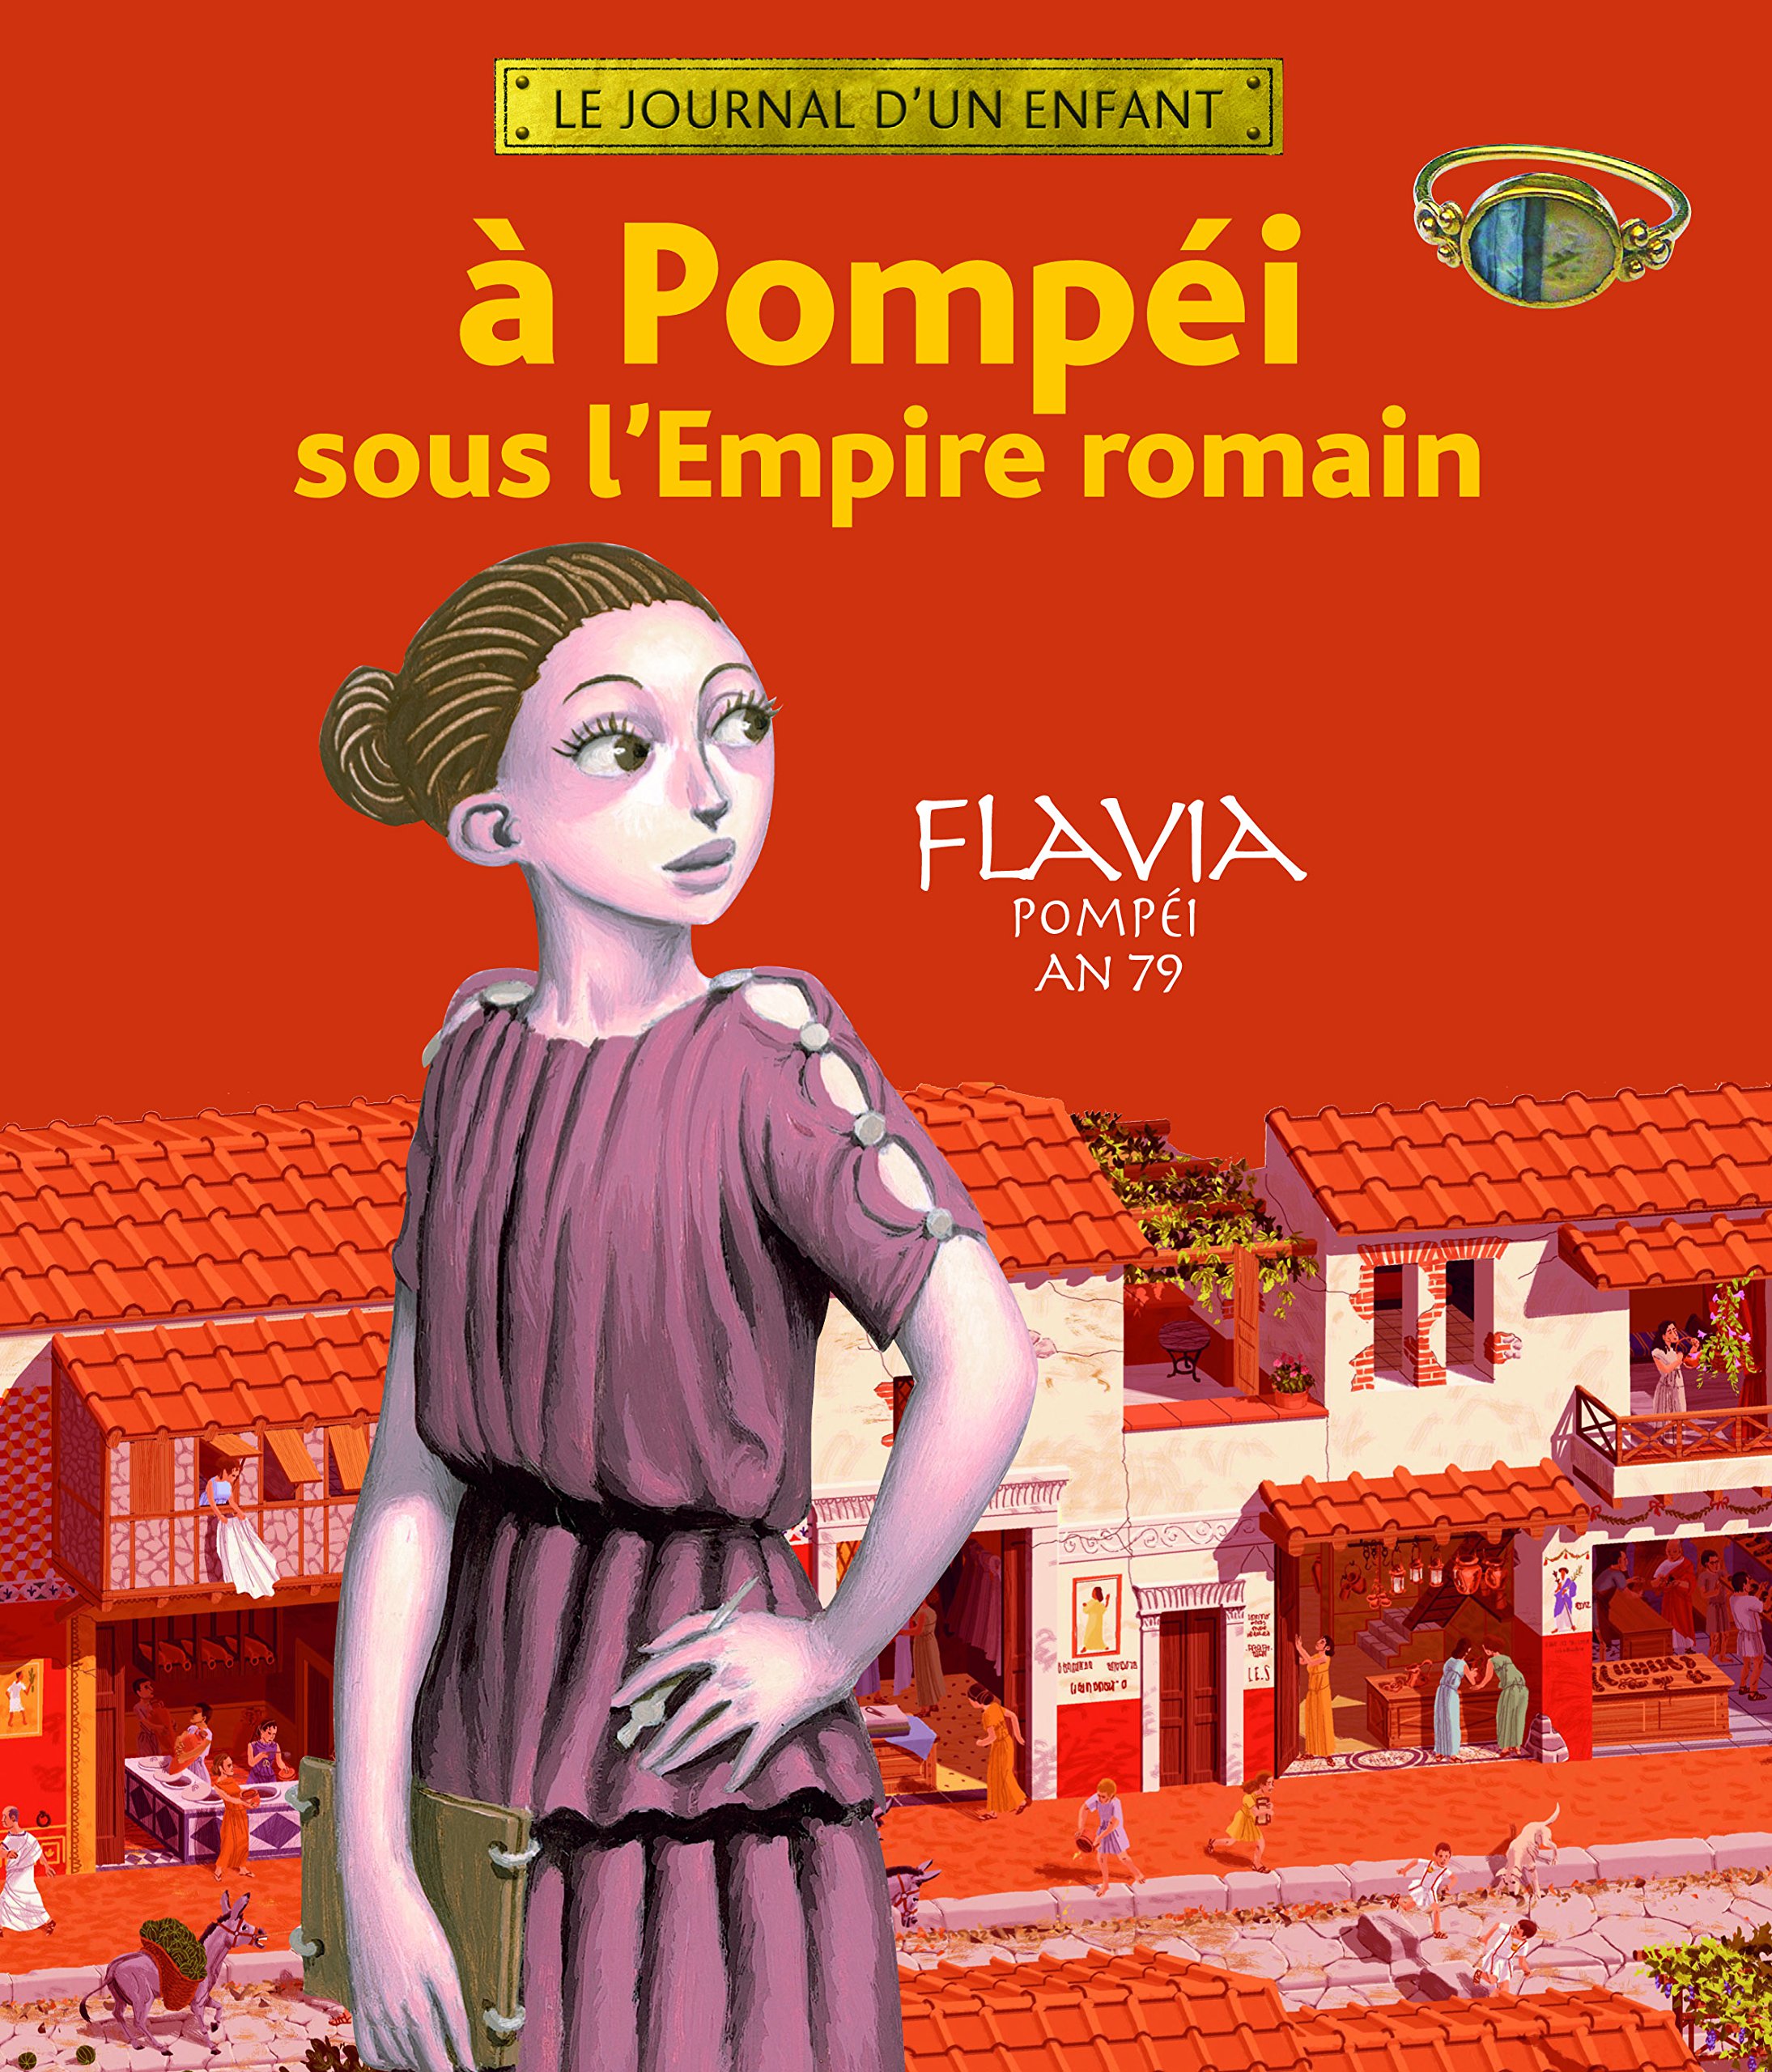 ÉPUISÉ - A Pompéi sous l'Empire romain. Flavia Pompéi an 79, 2007, 60 p. LIVRE POUR ENFANT À PARTIR DE 7 ANS.